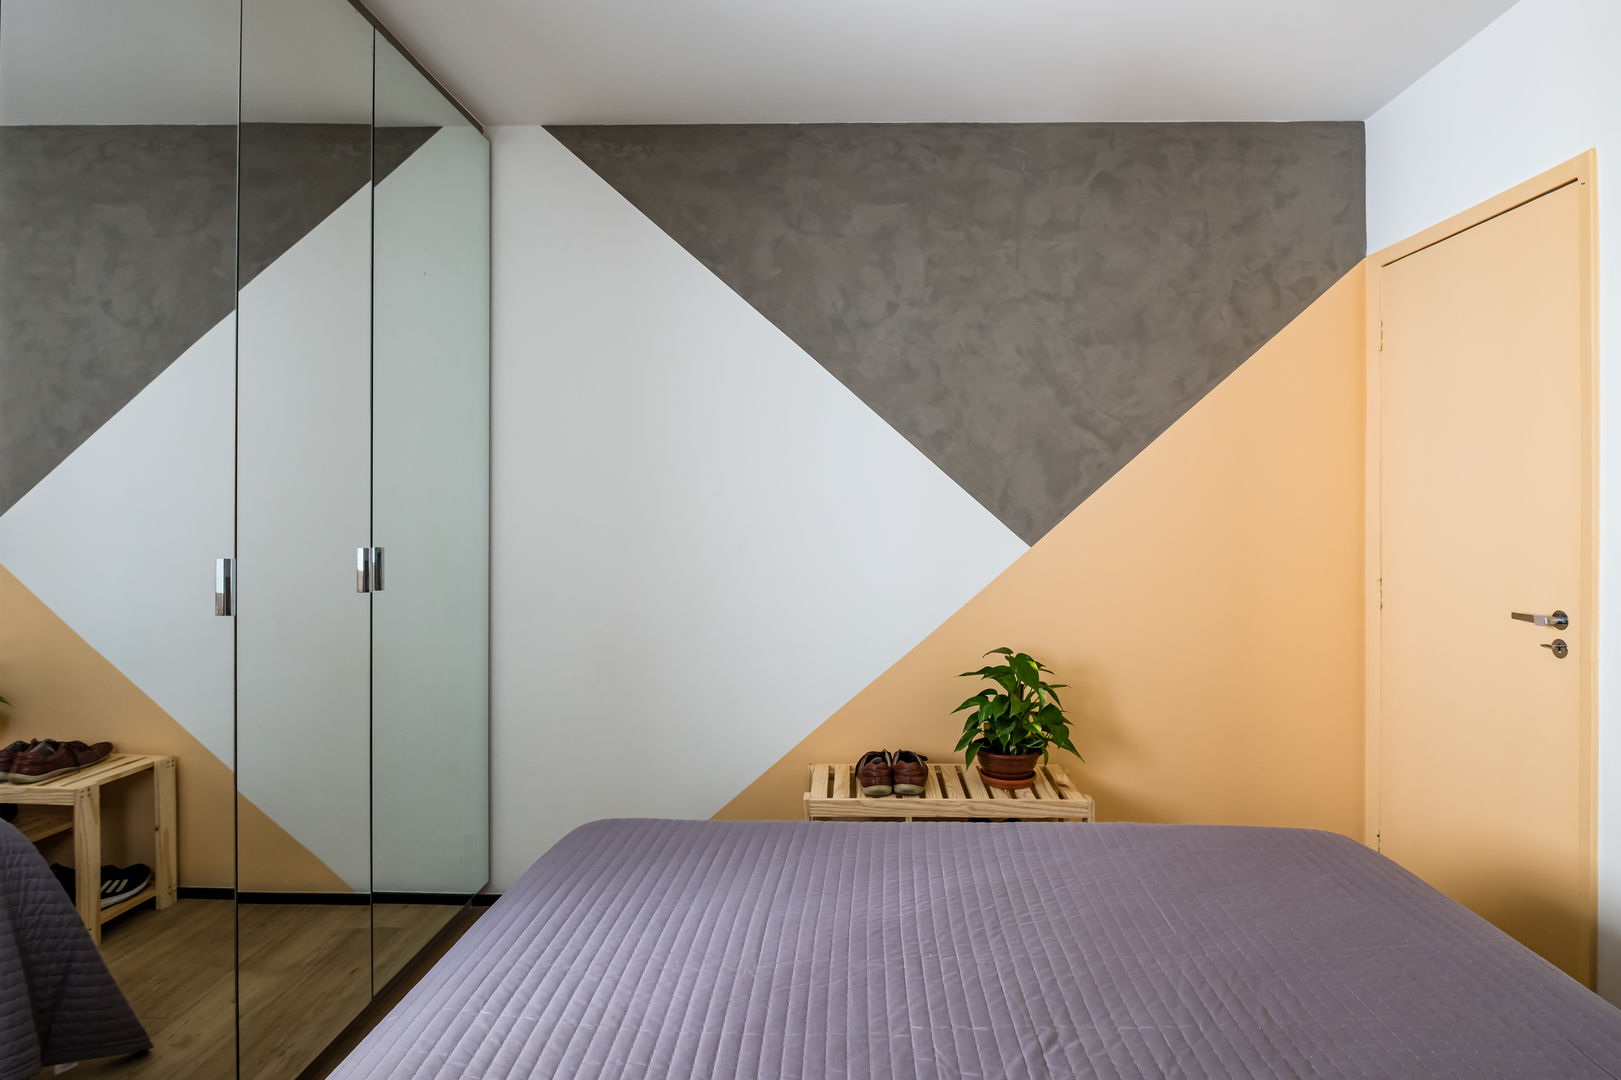 Apartamento Compacto para aluguel em tons neutros sem perder a personalidade, Studio Elã Studio Elã Cuartos pequeños Concreto